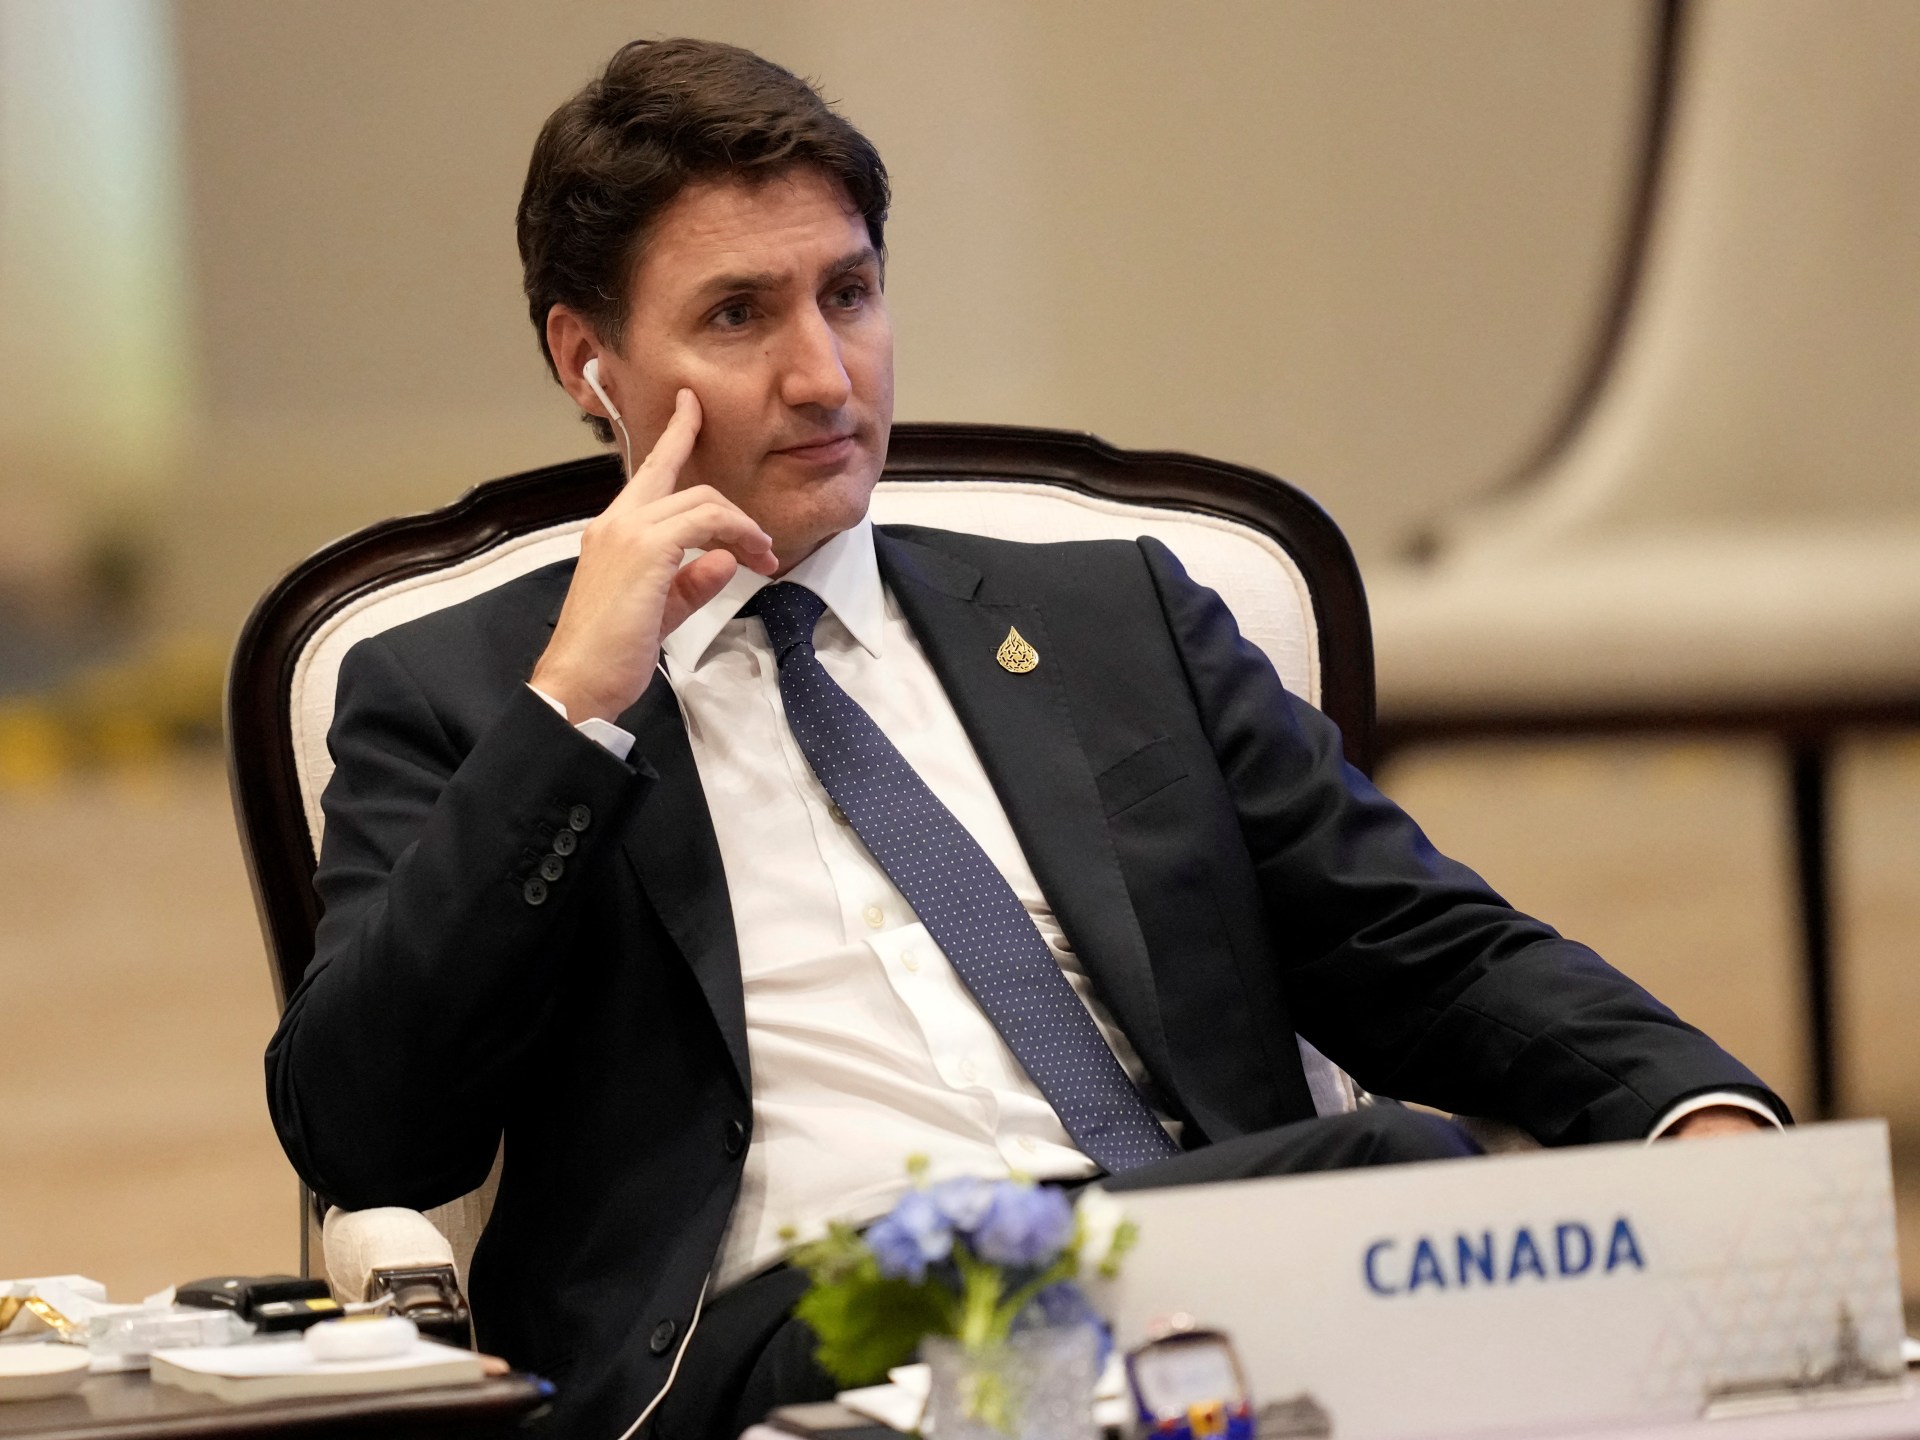 Kanada dan Arab Saudi menghidupkan kembali hubungan diplomatik setelah perpecahan tahun 2018 |  Berita Politik